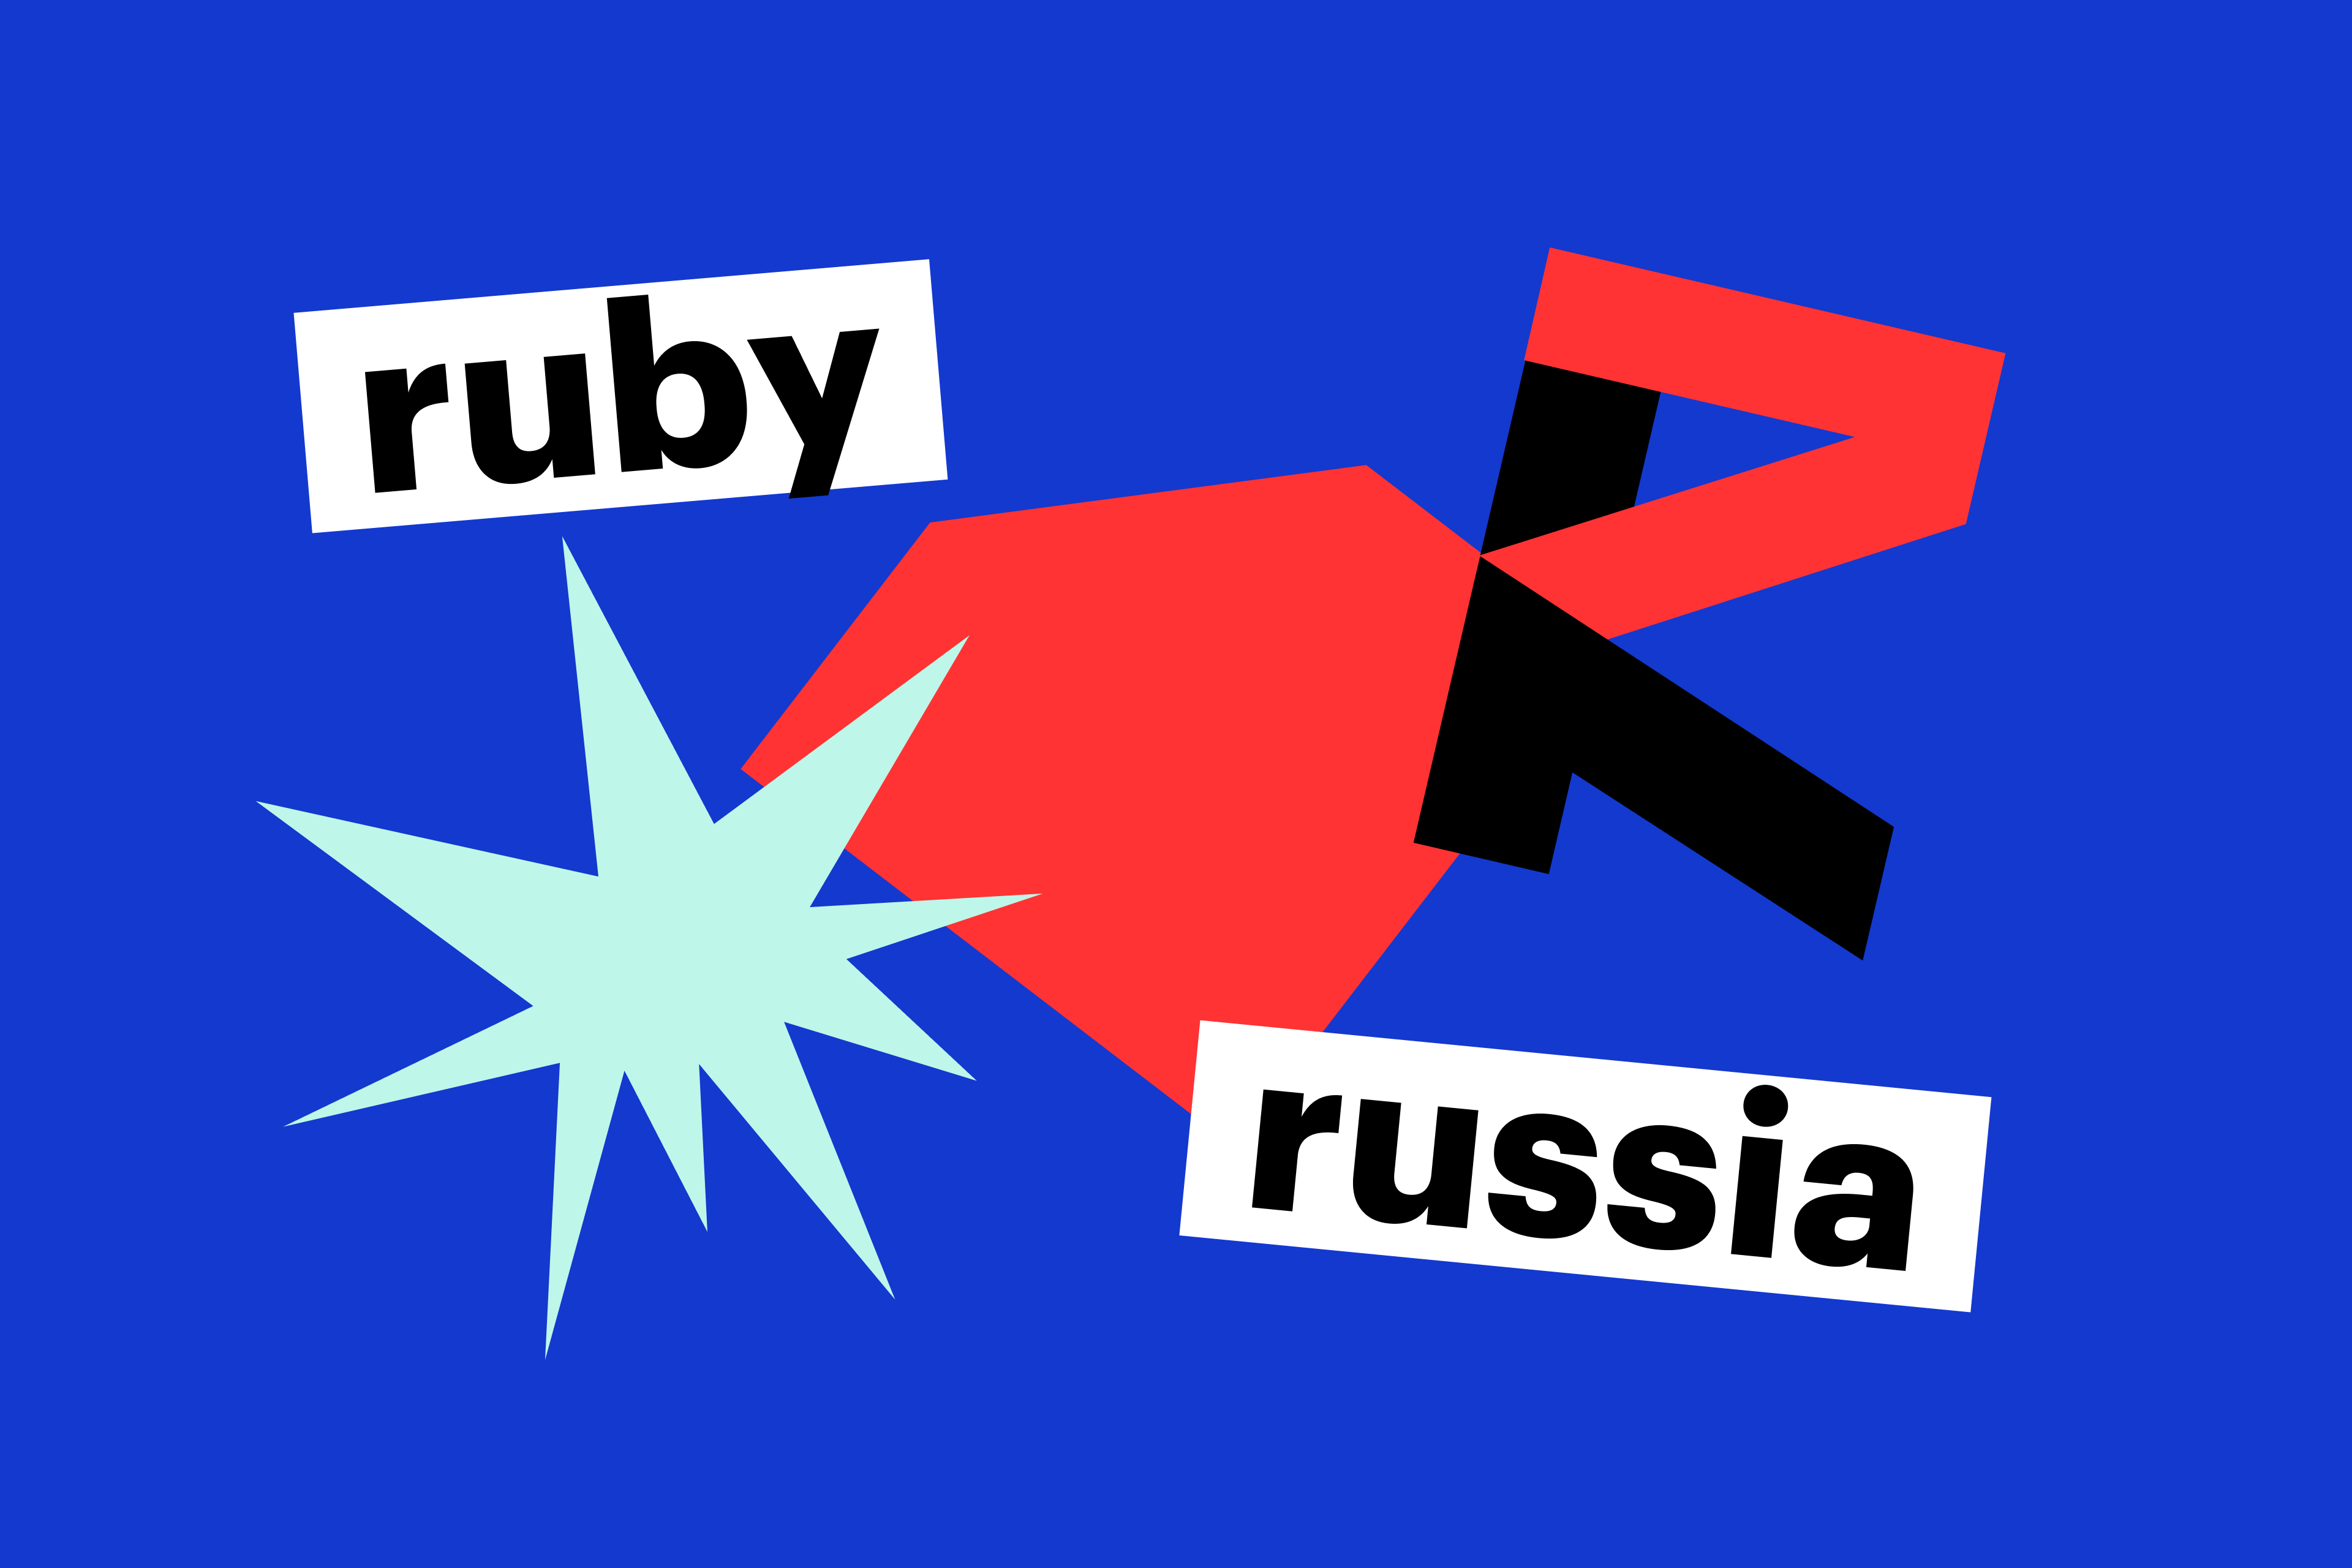 Фирменный стиль RubyRussia: трансформация айдентики за 10 лет